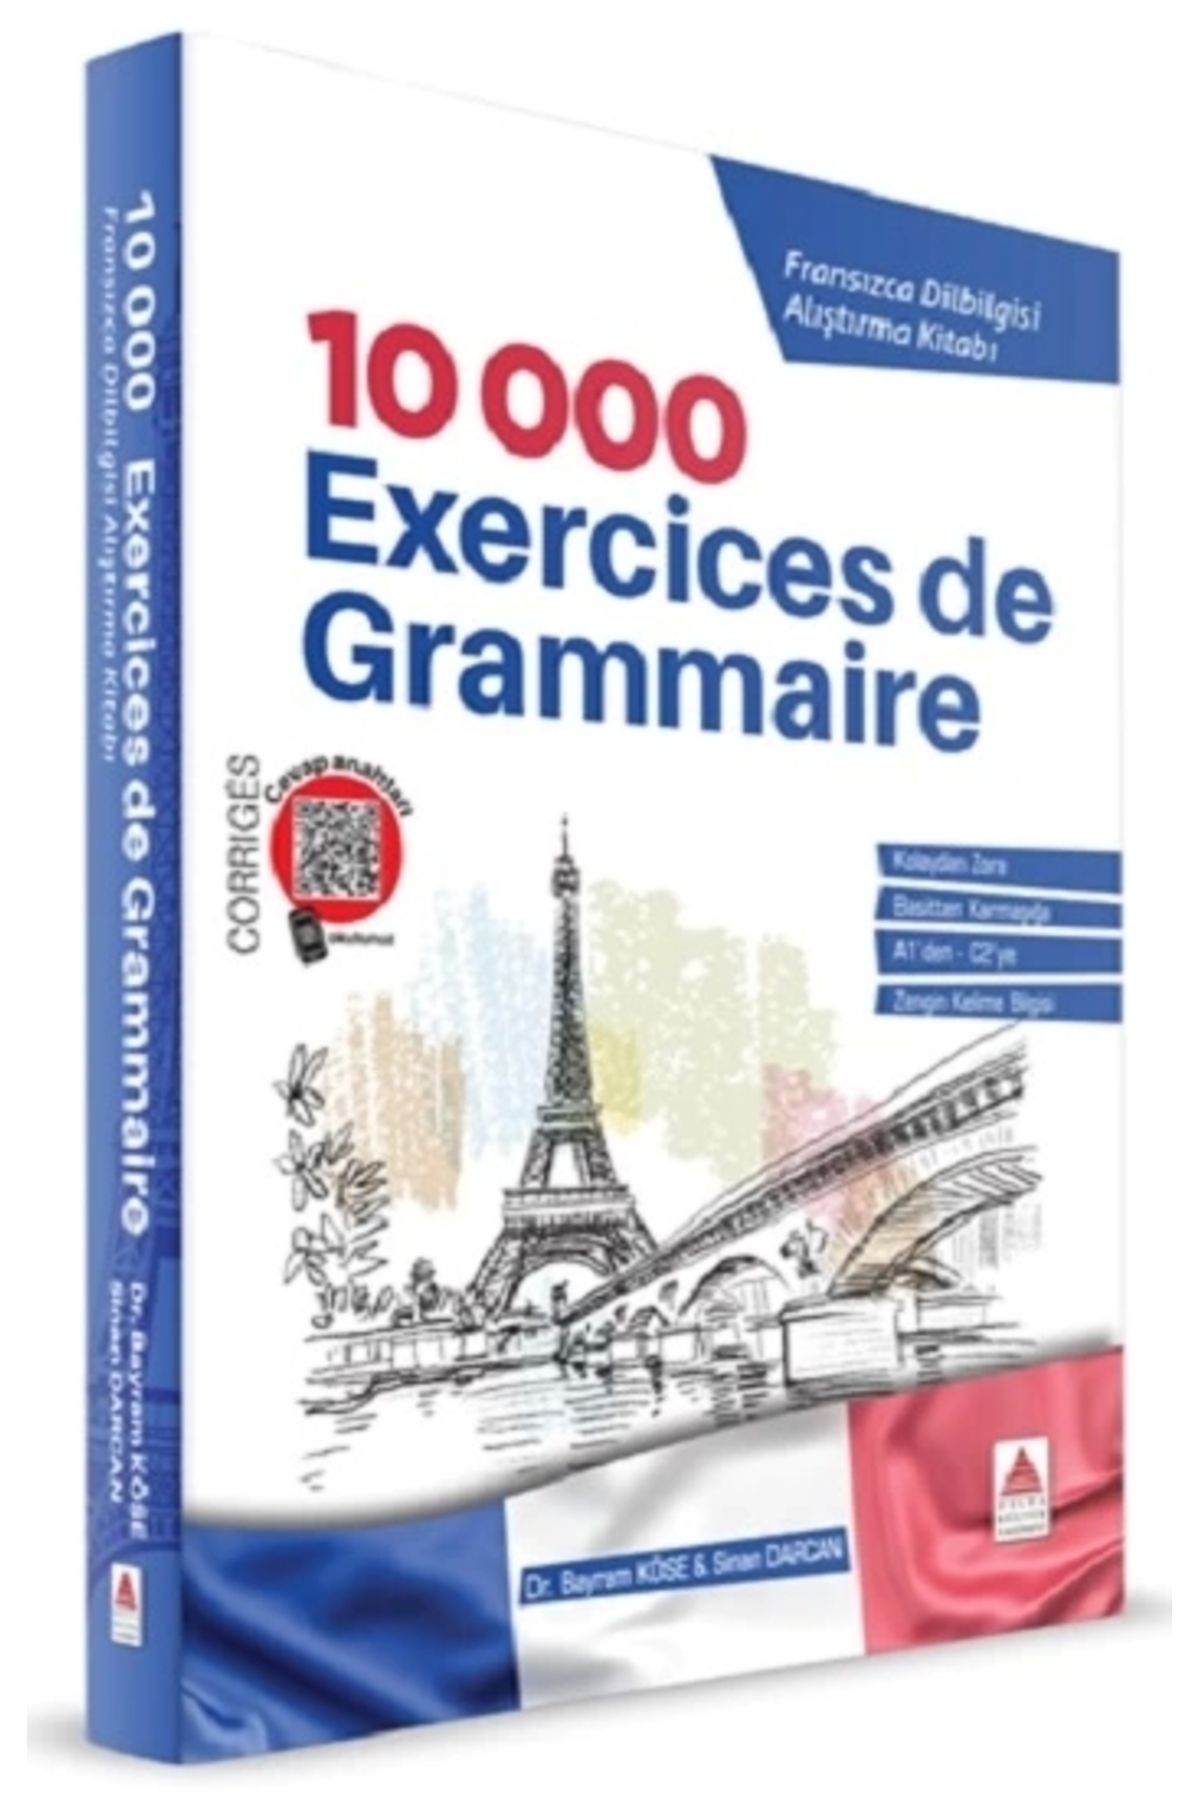 Delta Kültür Yayınevi 10 000 Exercices de Grammaire Fransızca Dilbilgisi Alıştırma Kitabı